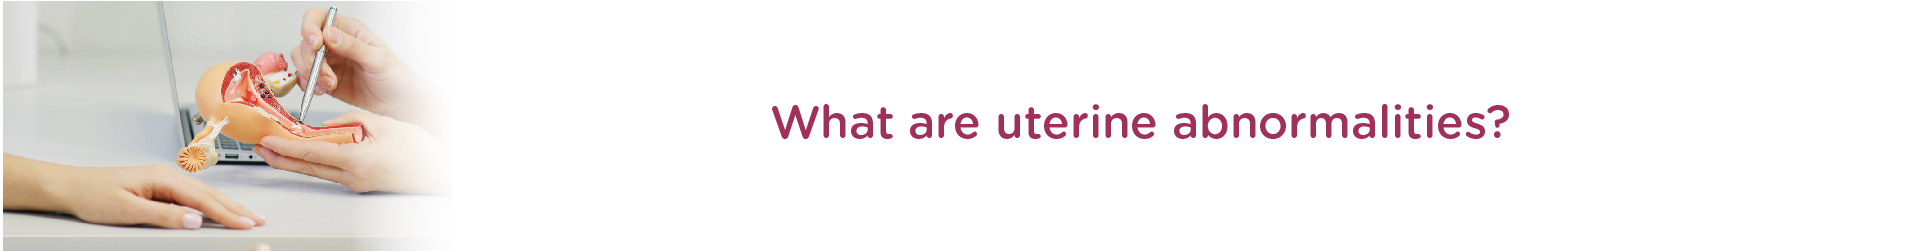 What are Uterine Abnormalities?